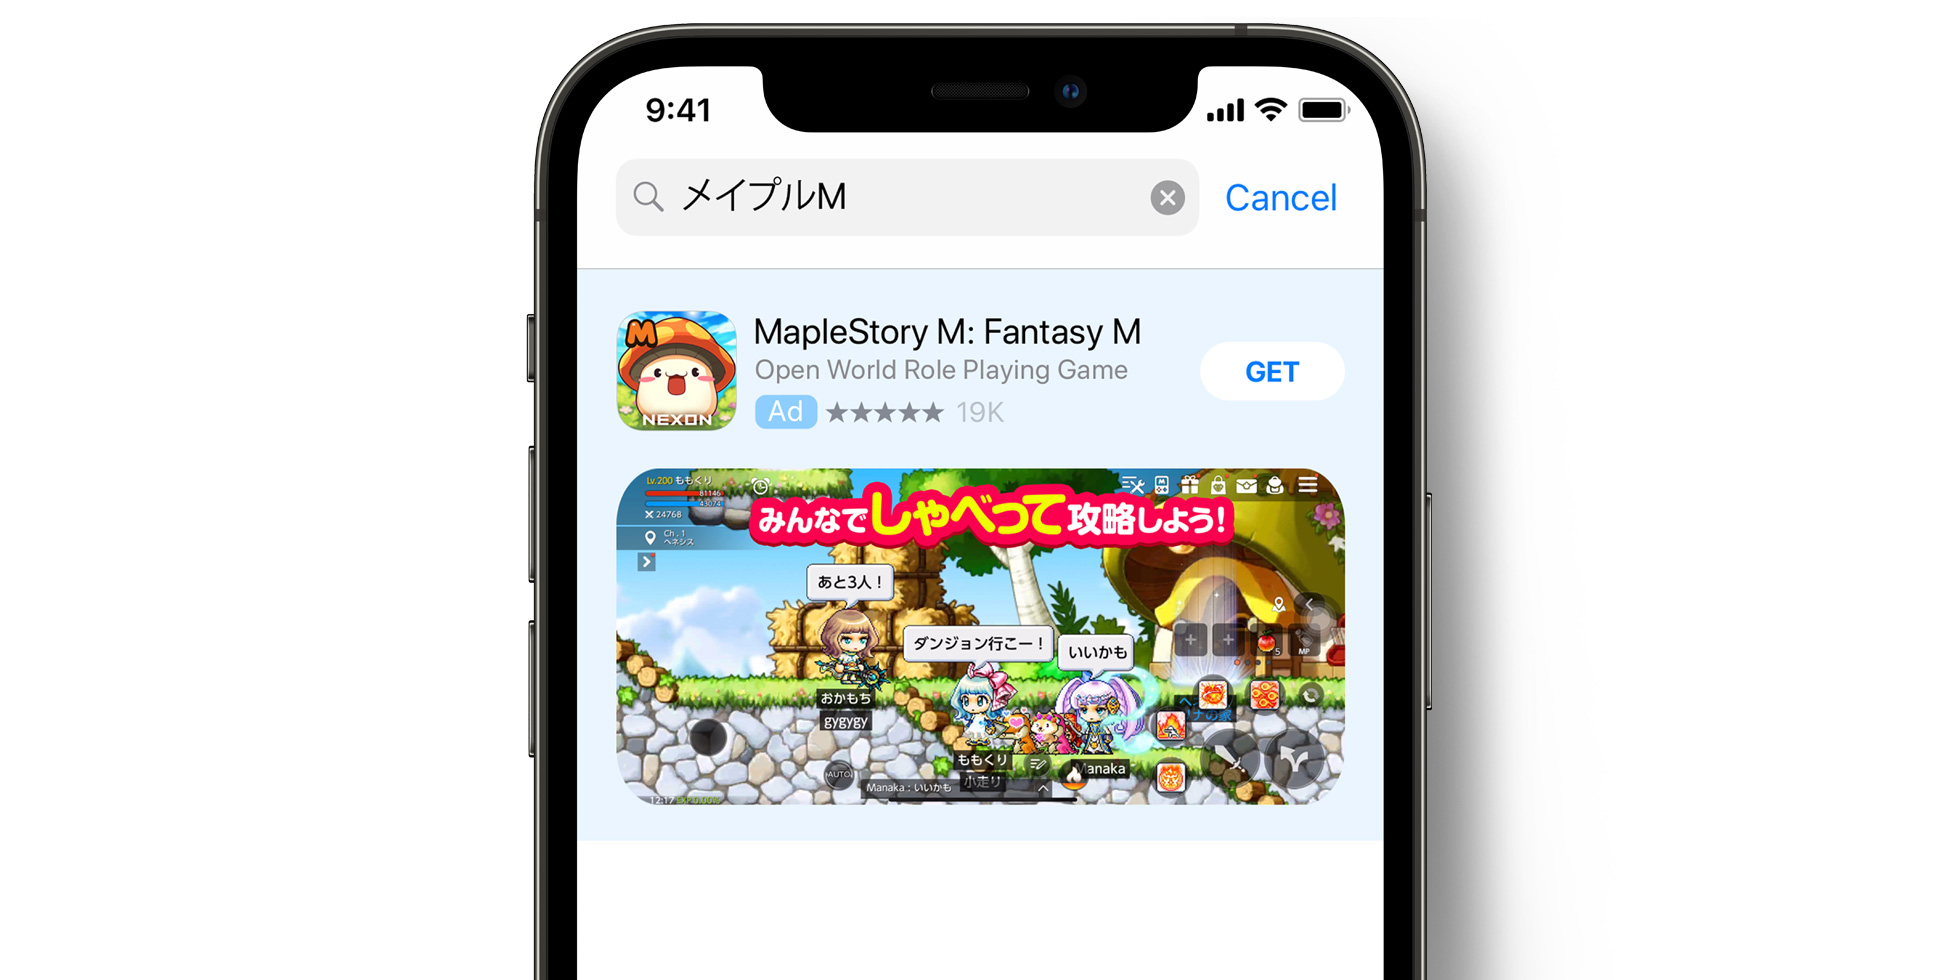 Publicité de MapleStory M dans l’App Store